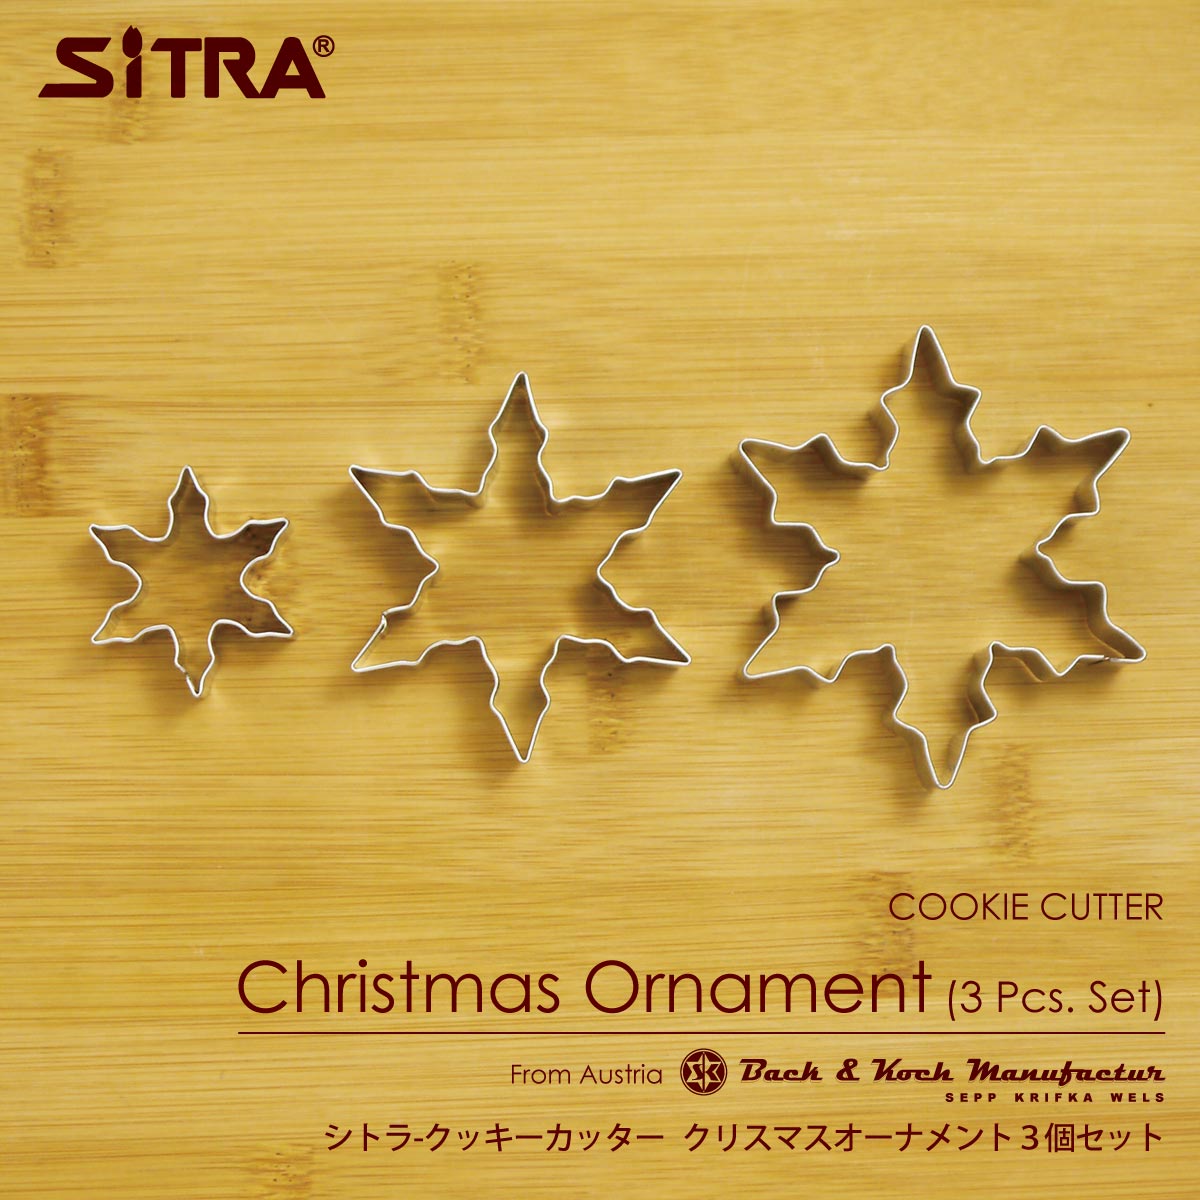 クッキー型 クリスマス 「 クリスマス オーナメント 3個 セット 」ヨーロッパ で 人気 の クッキー 型を取り寄せました！お菓子 作りに! 手作りクッキー プレゼント ギフト に! SiTRA シトラ クッキー型 花 葉っぱ 果物 植物